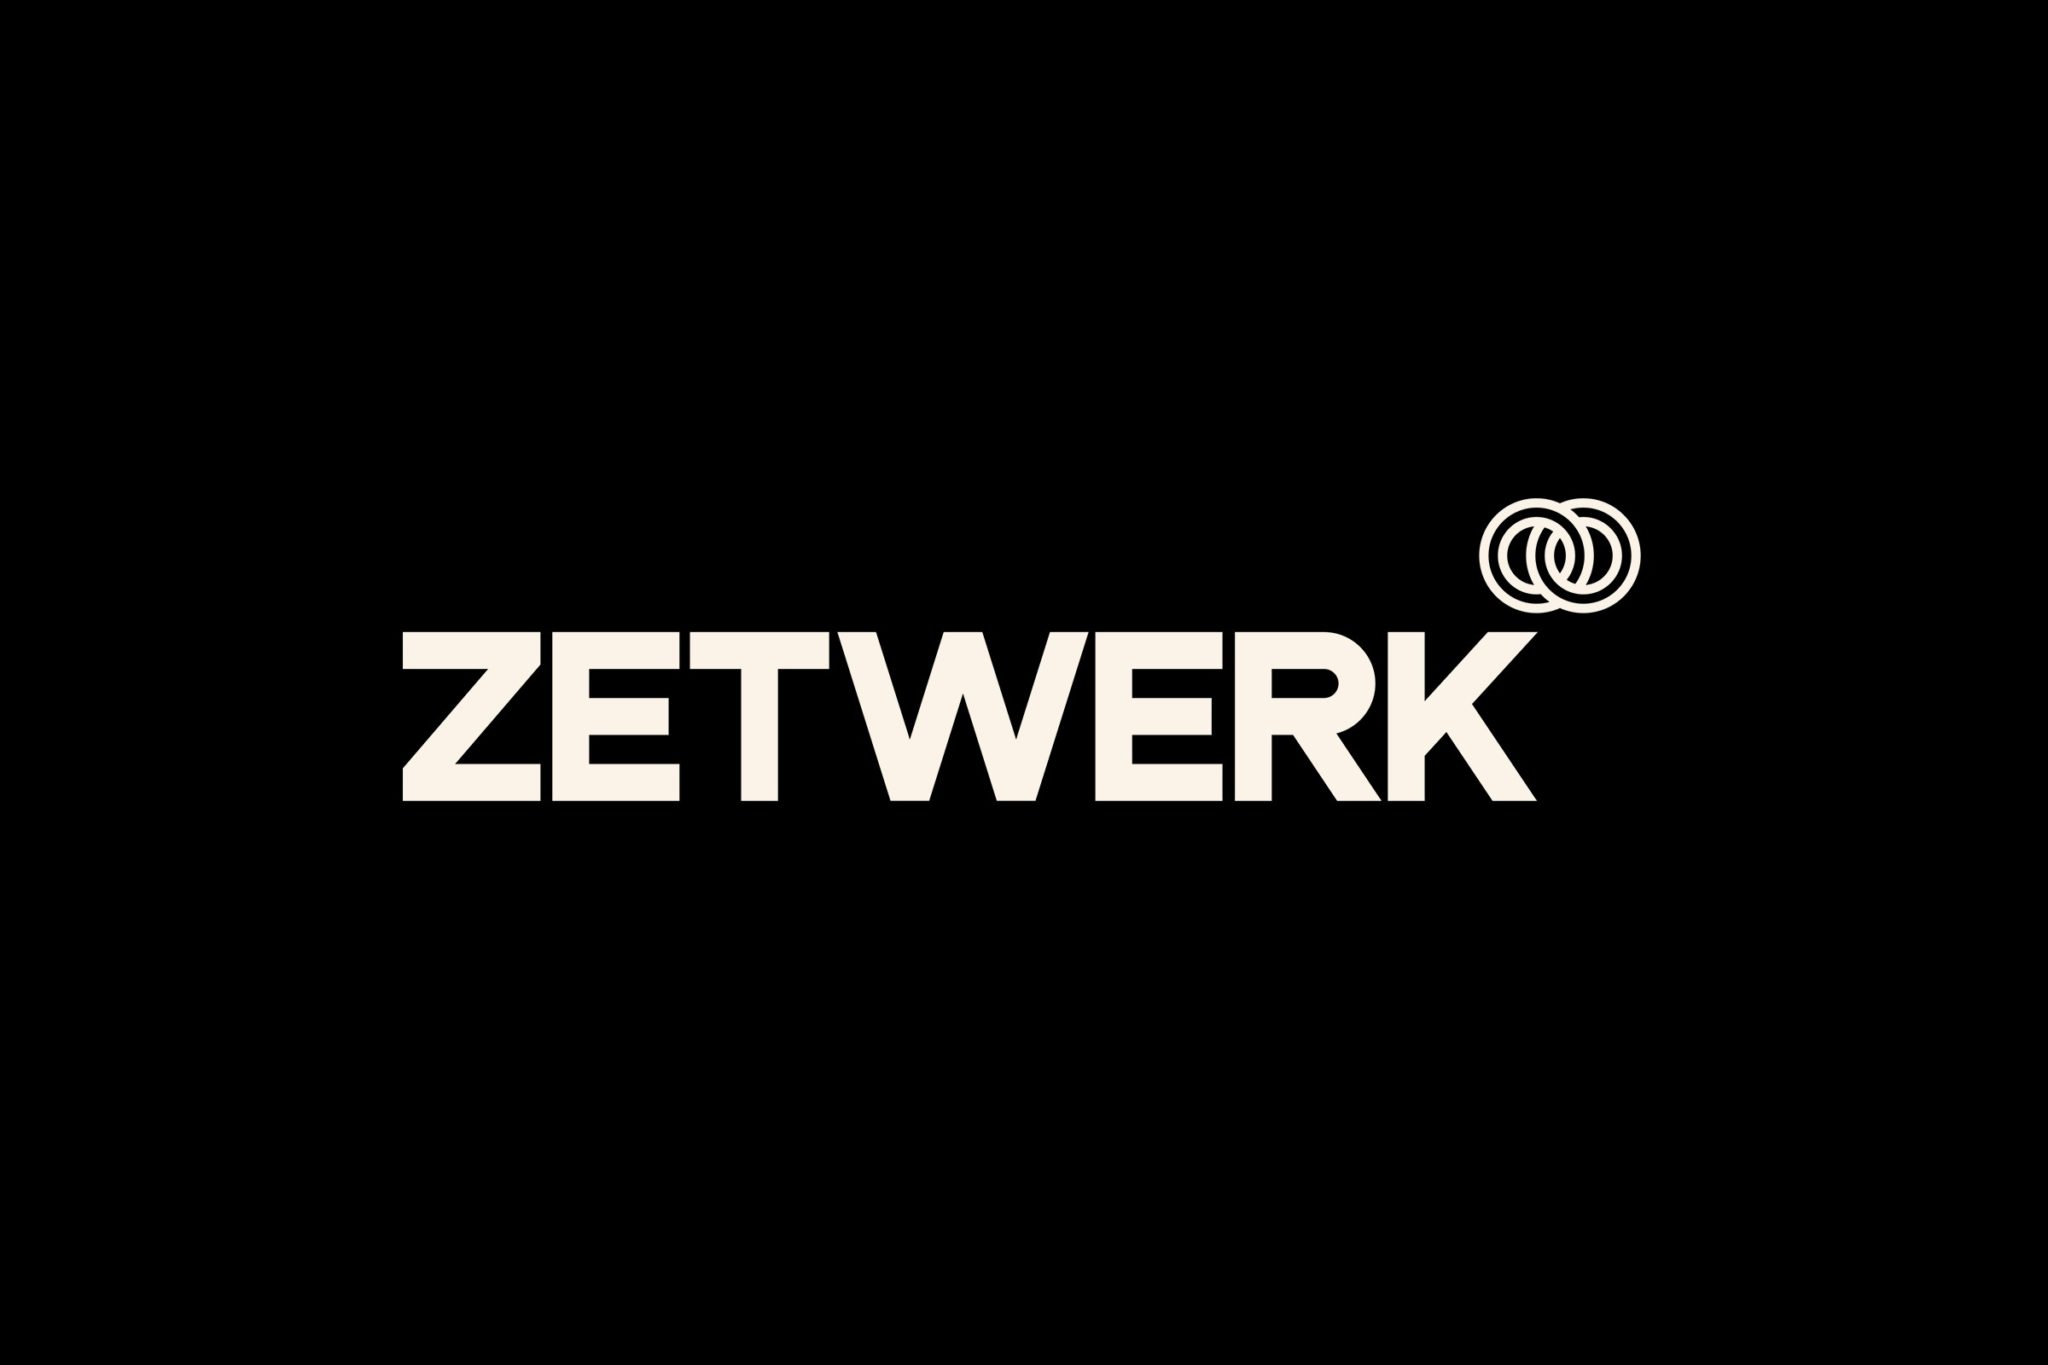 Zetwerk Statistics and Facts 2022